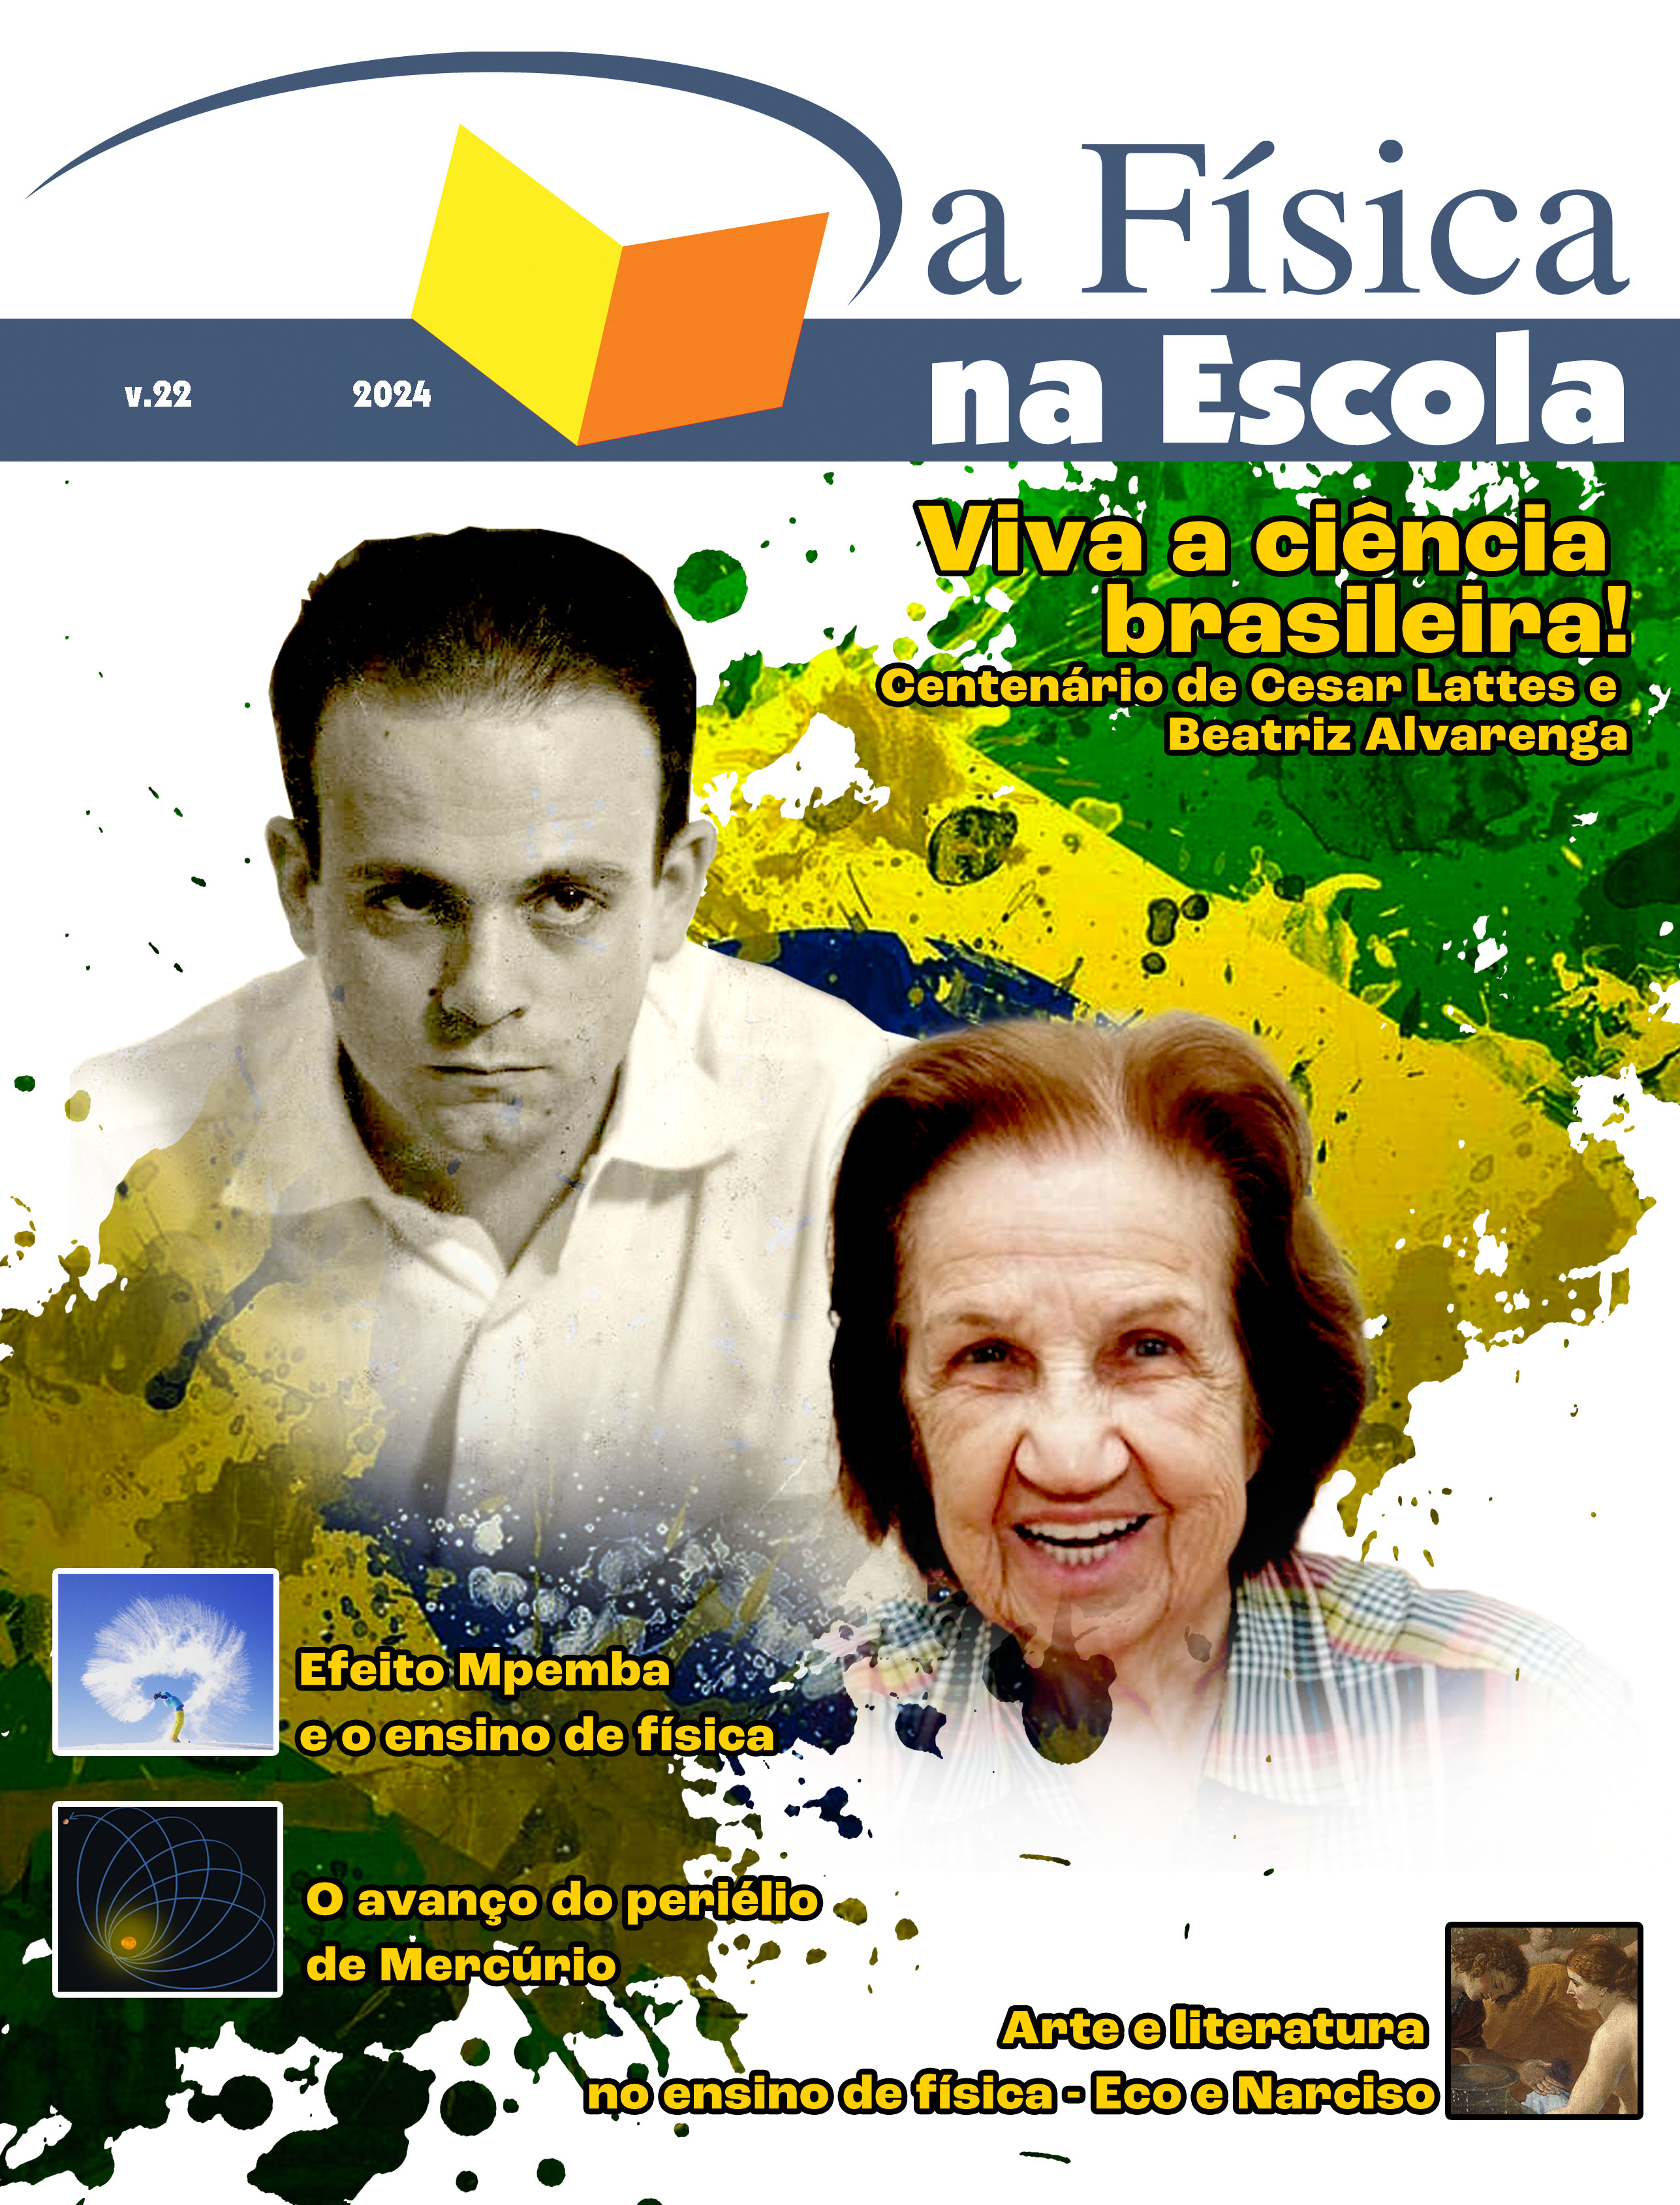 Capa do volume 22 apresentando ao centro as imagens de Cesar Lattes e Beatriz Alvarenga.